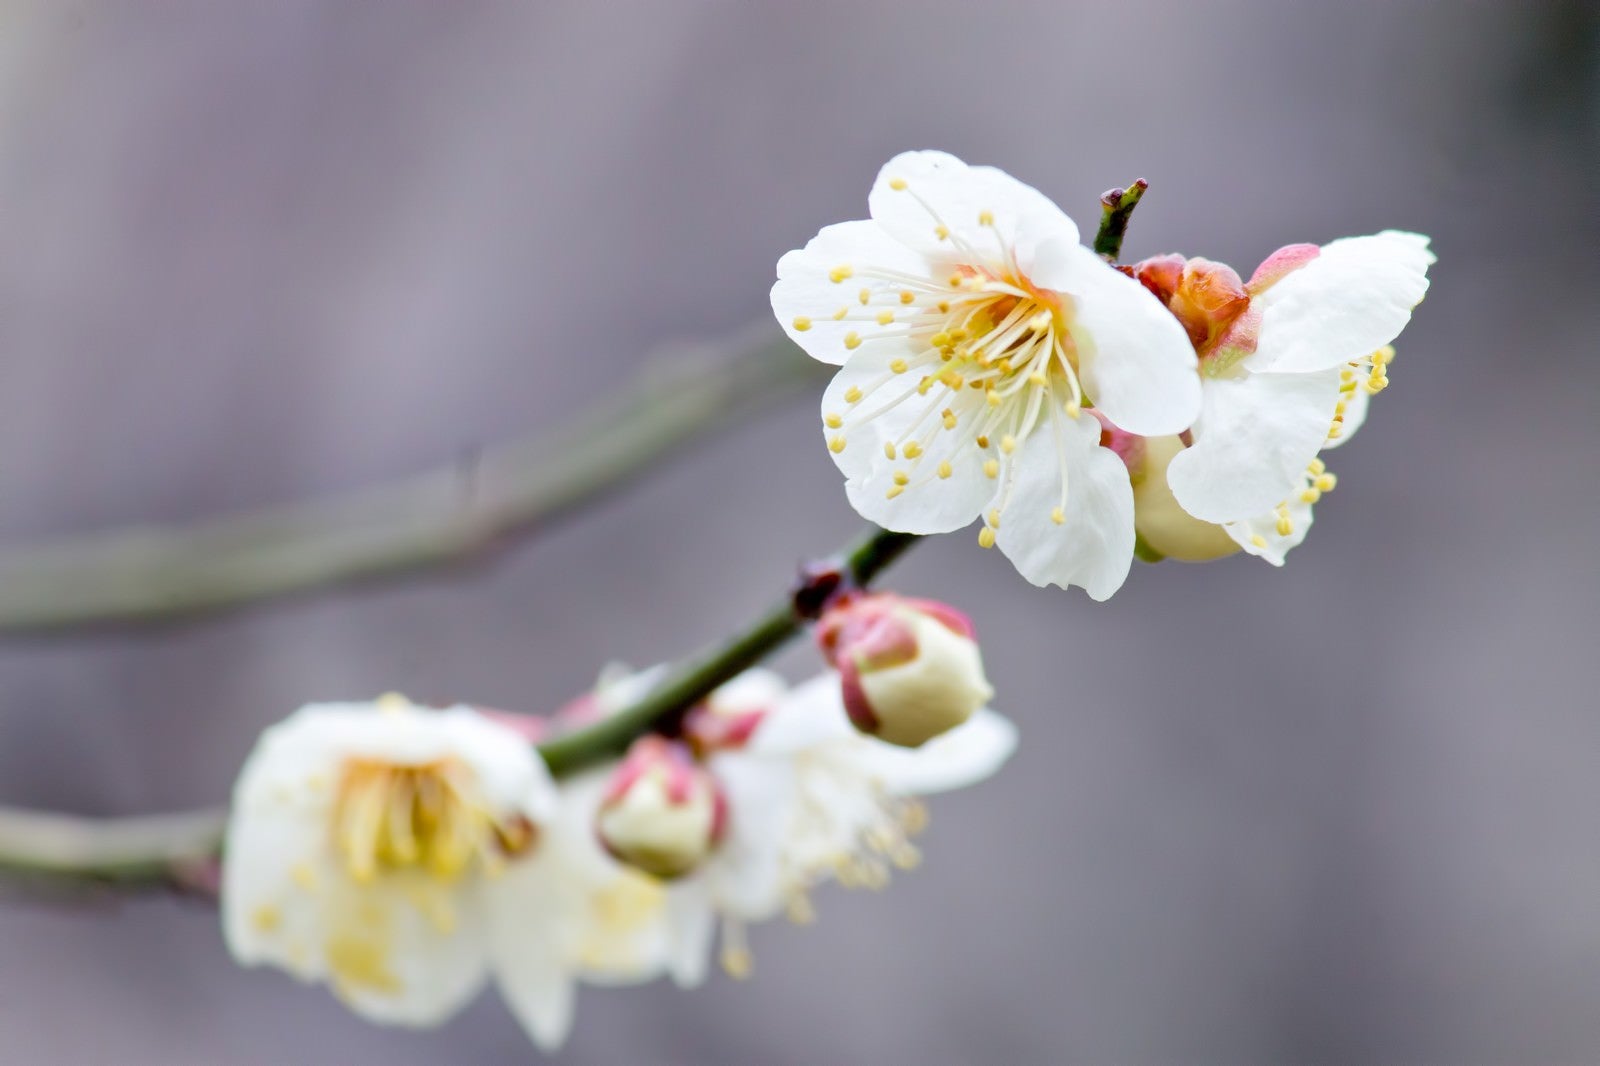 「枝に花咲く梅の花」の写真